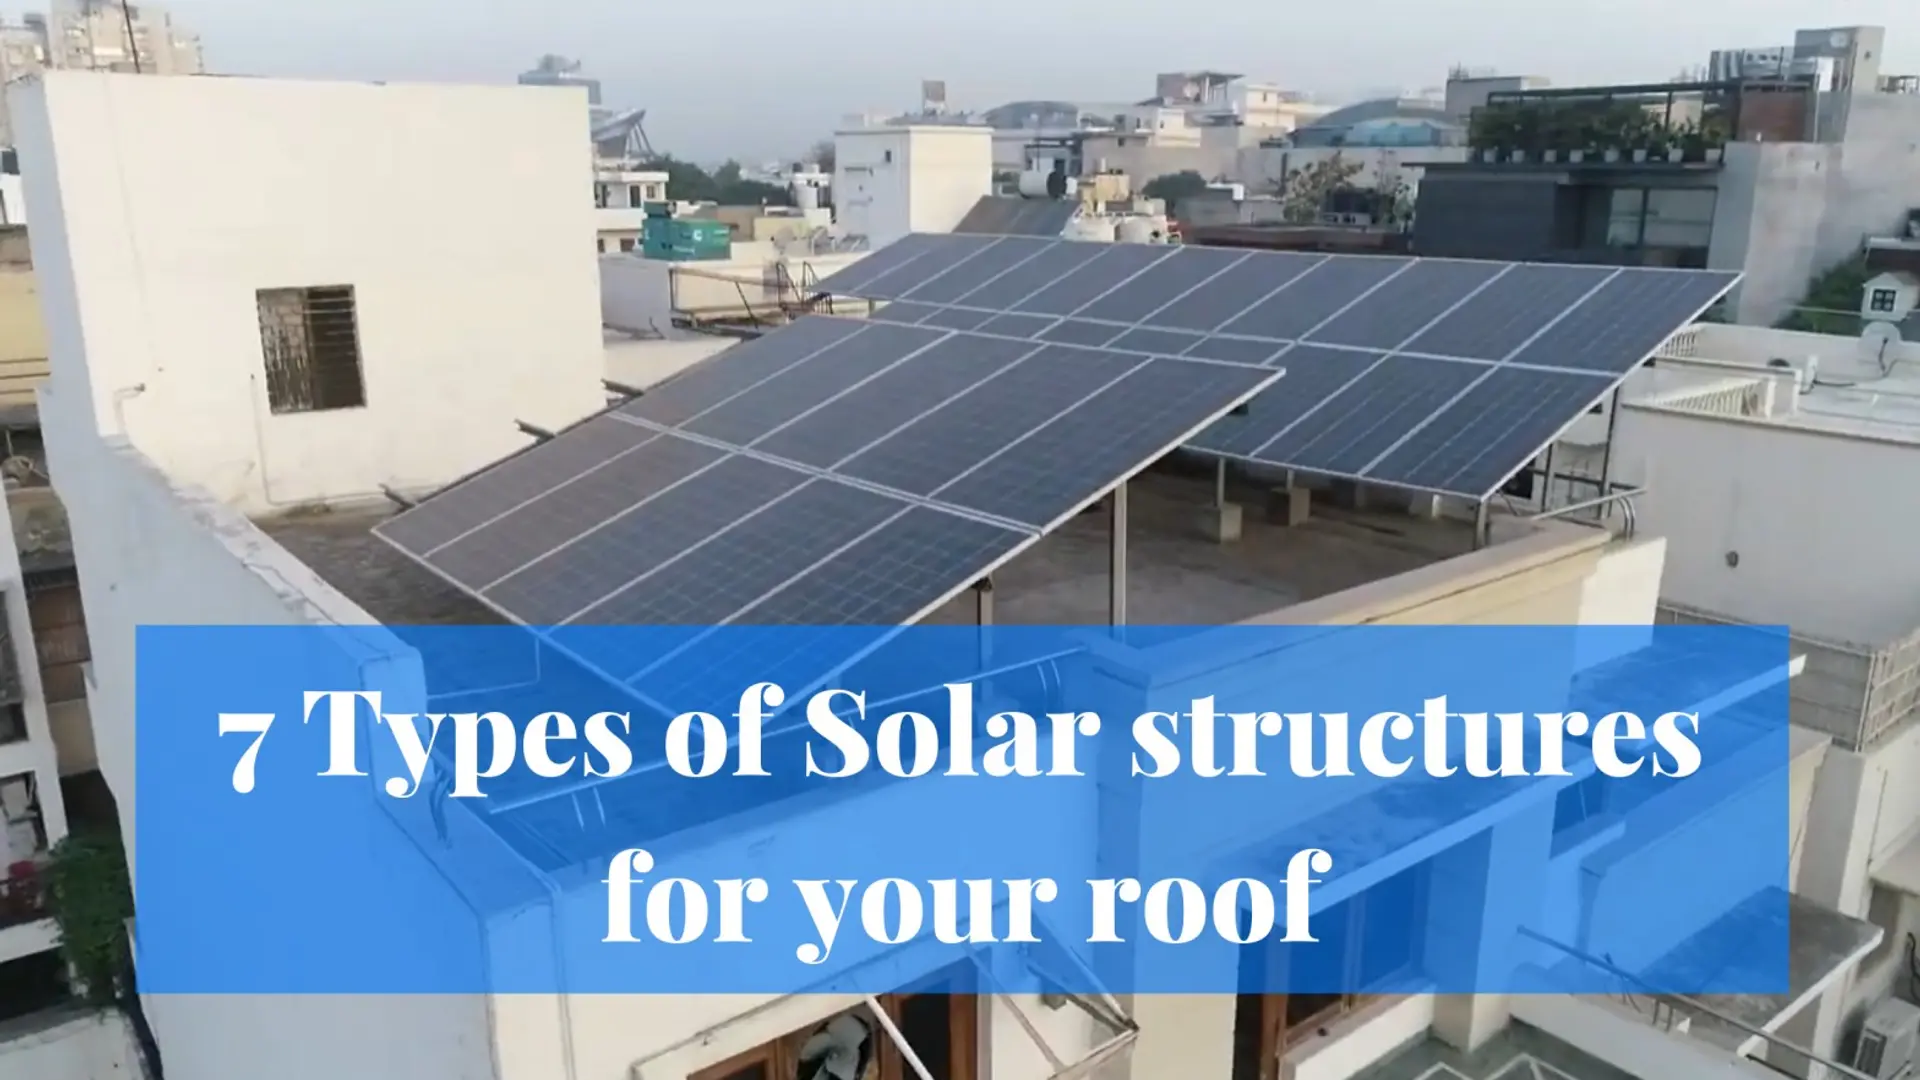 आपकी छत के लिए 7 प्रकार की सौर संरचनाएं